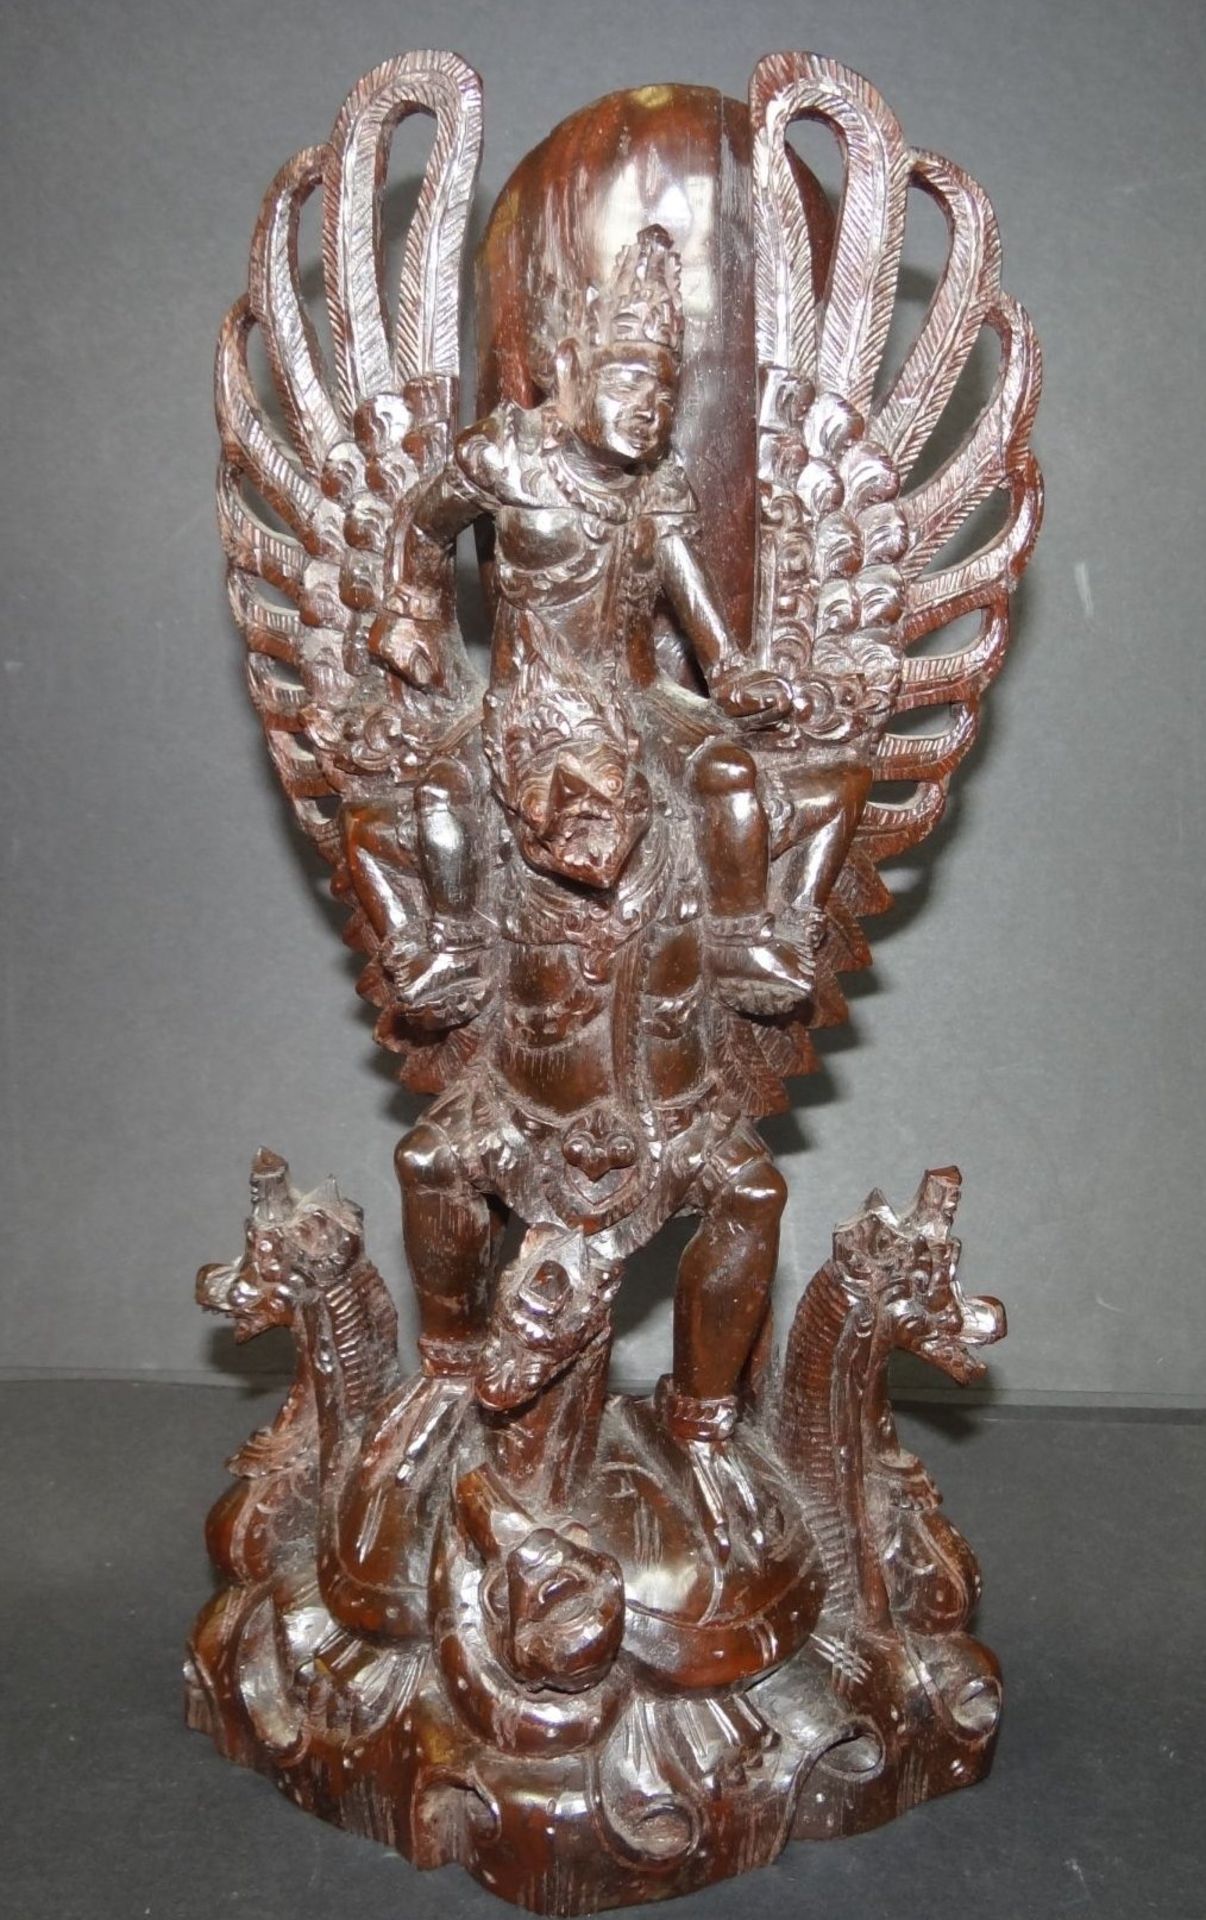 Holzschnitzerei, indon. Gottheit "Garuda" mit Drachenköpfen, H-32 cm, B-16 cm, ält - Bild 2 aus 7